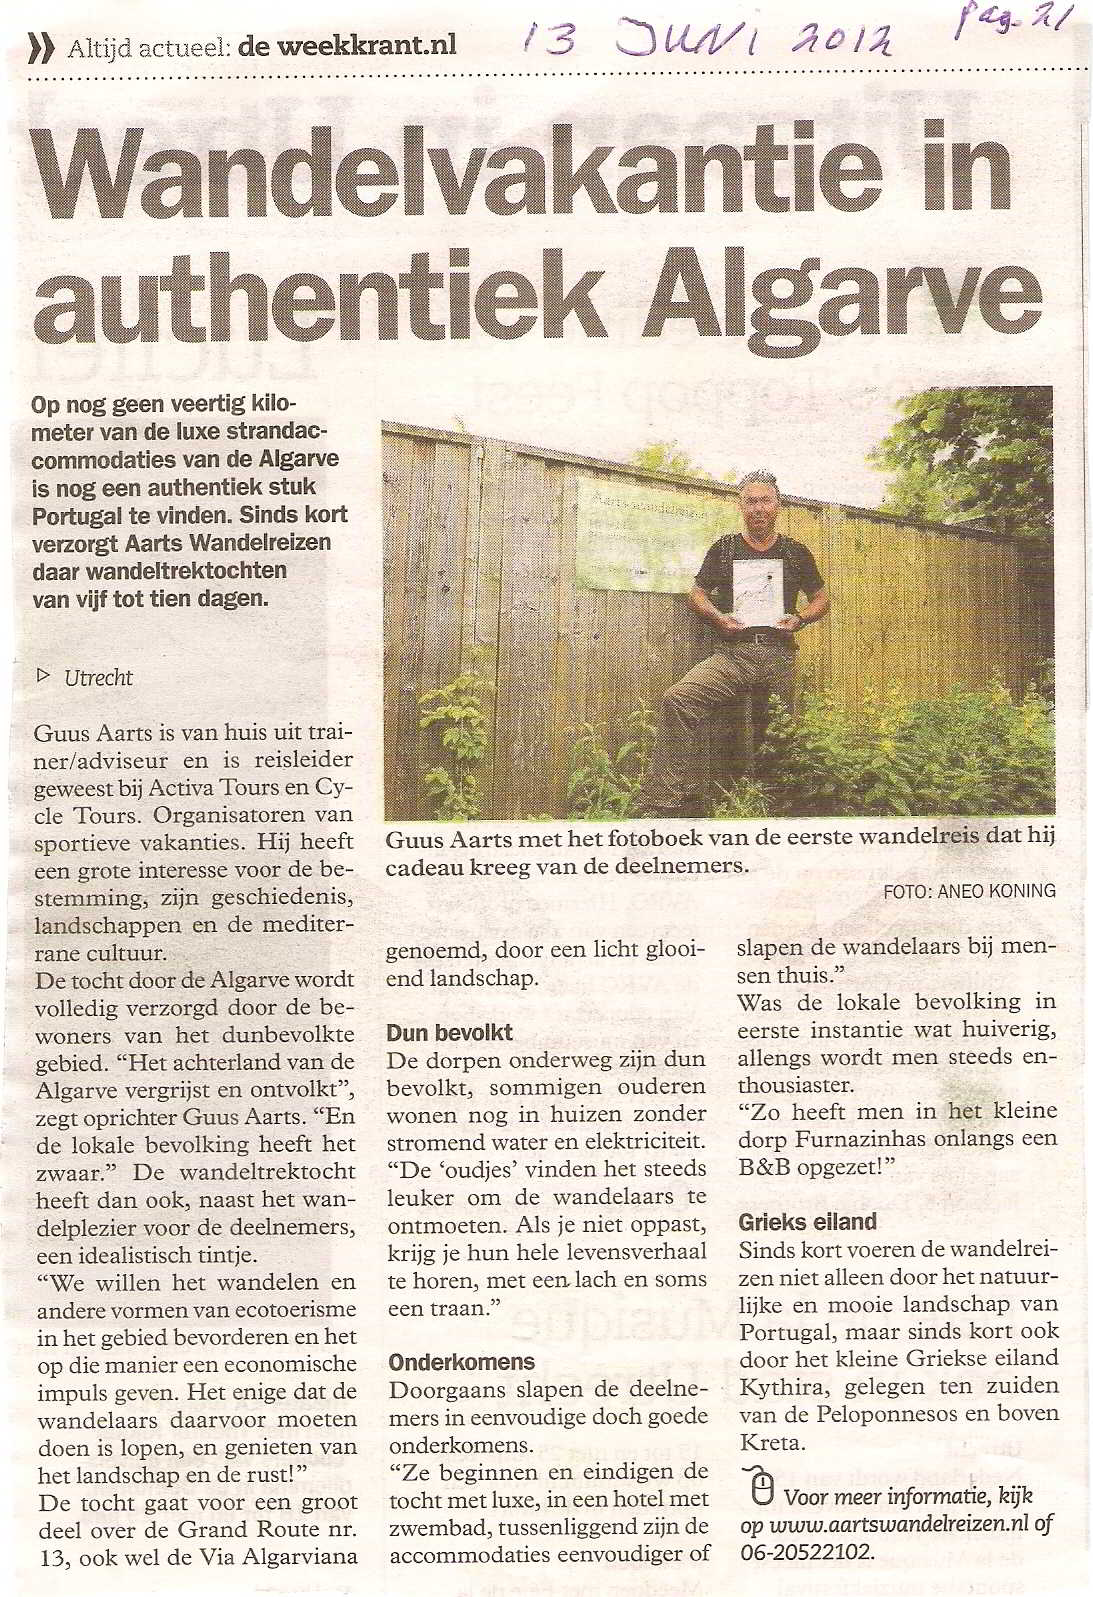 Aarts Wandelreizen in de Media - Volkskrant bijlage 13 juni 2013